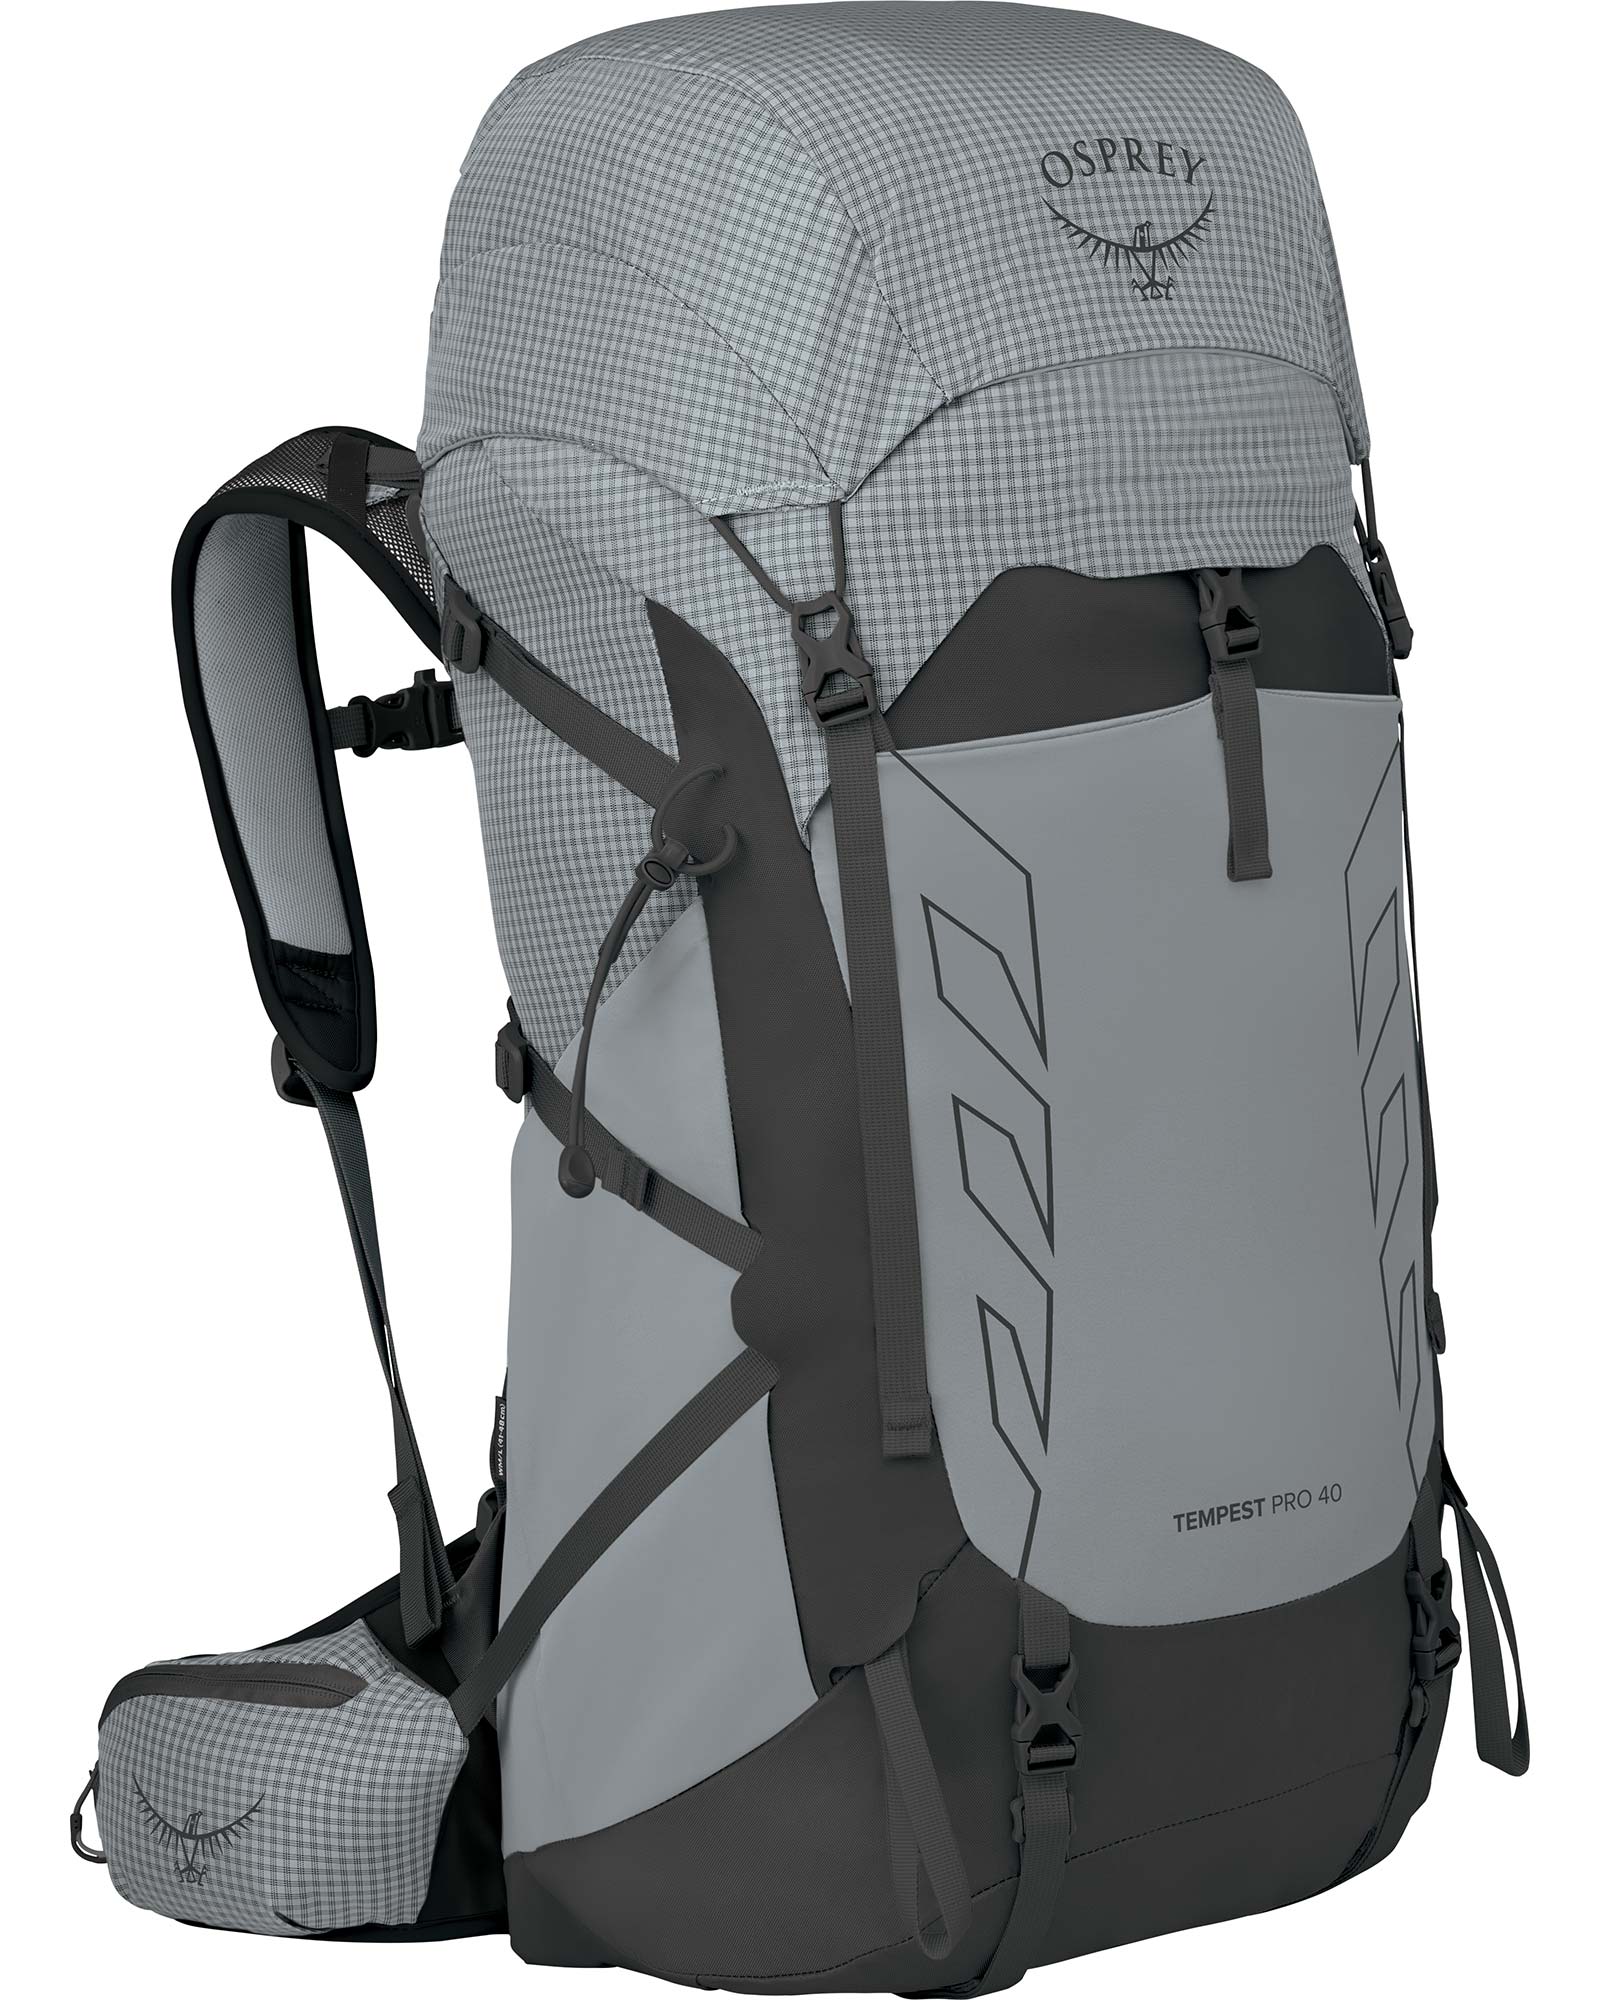 Osprey Tempest Pro 40 Backpack